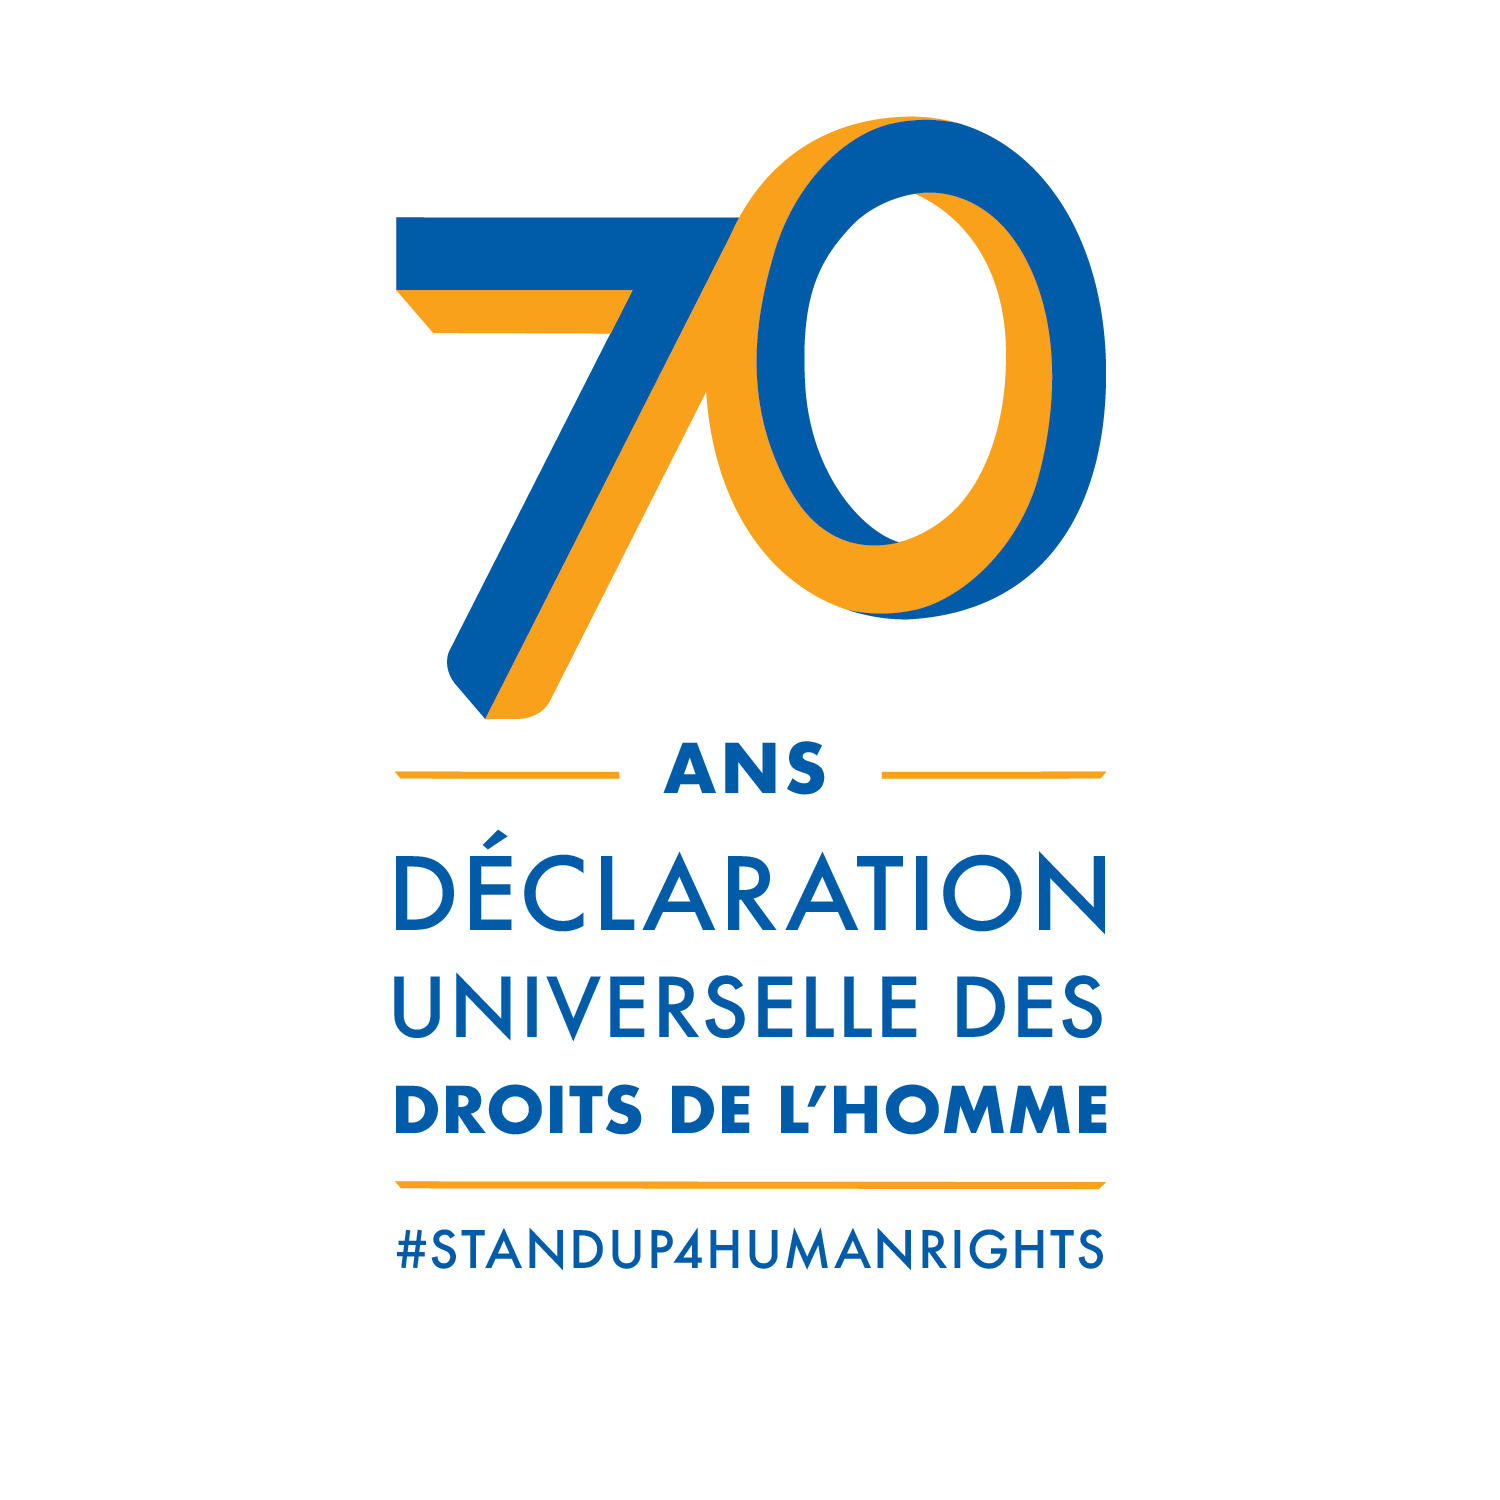 70 ans - Declaration universelle des droits de l'homme - #StandUp4HumanRights